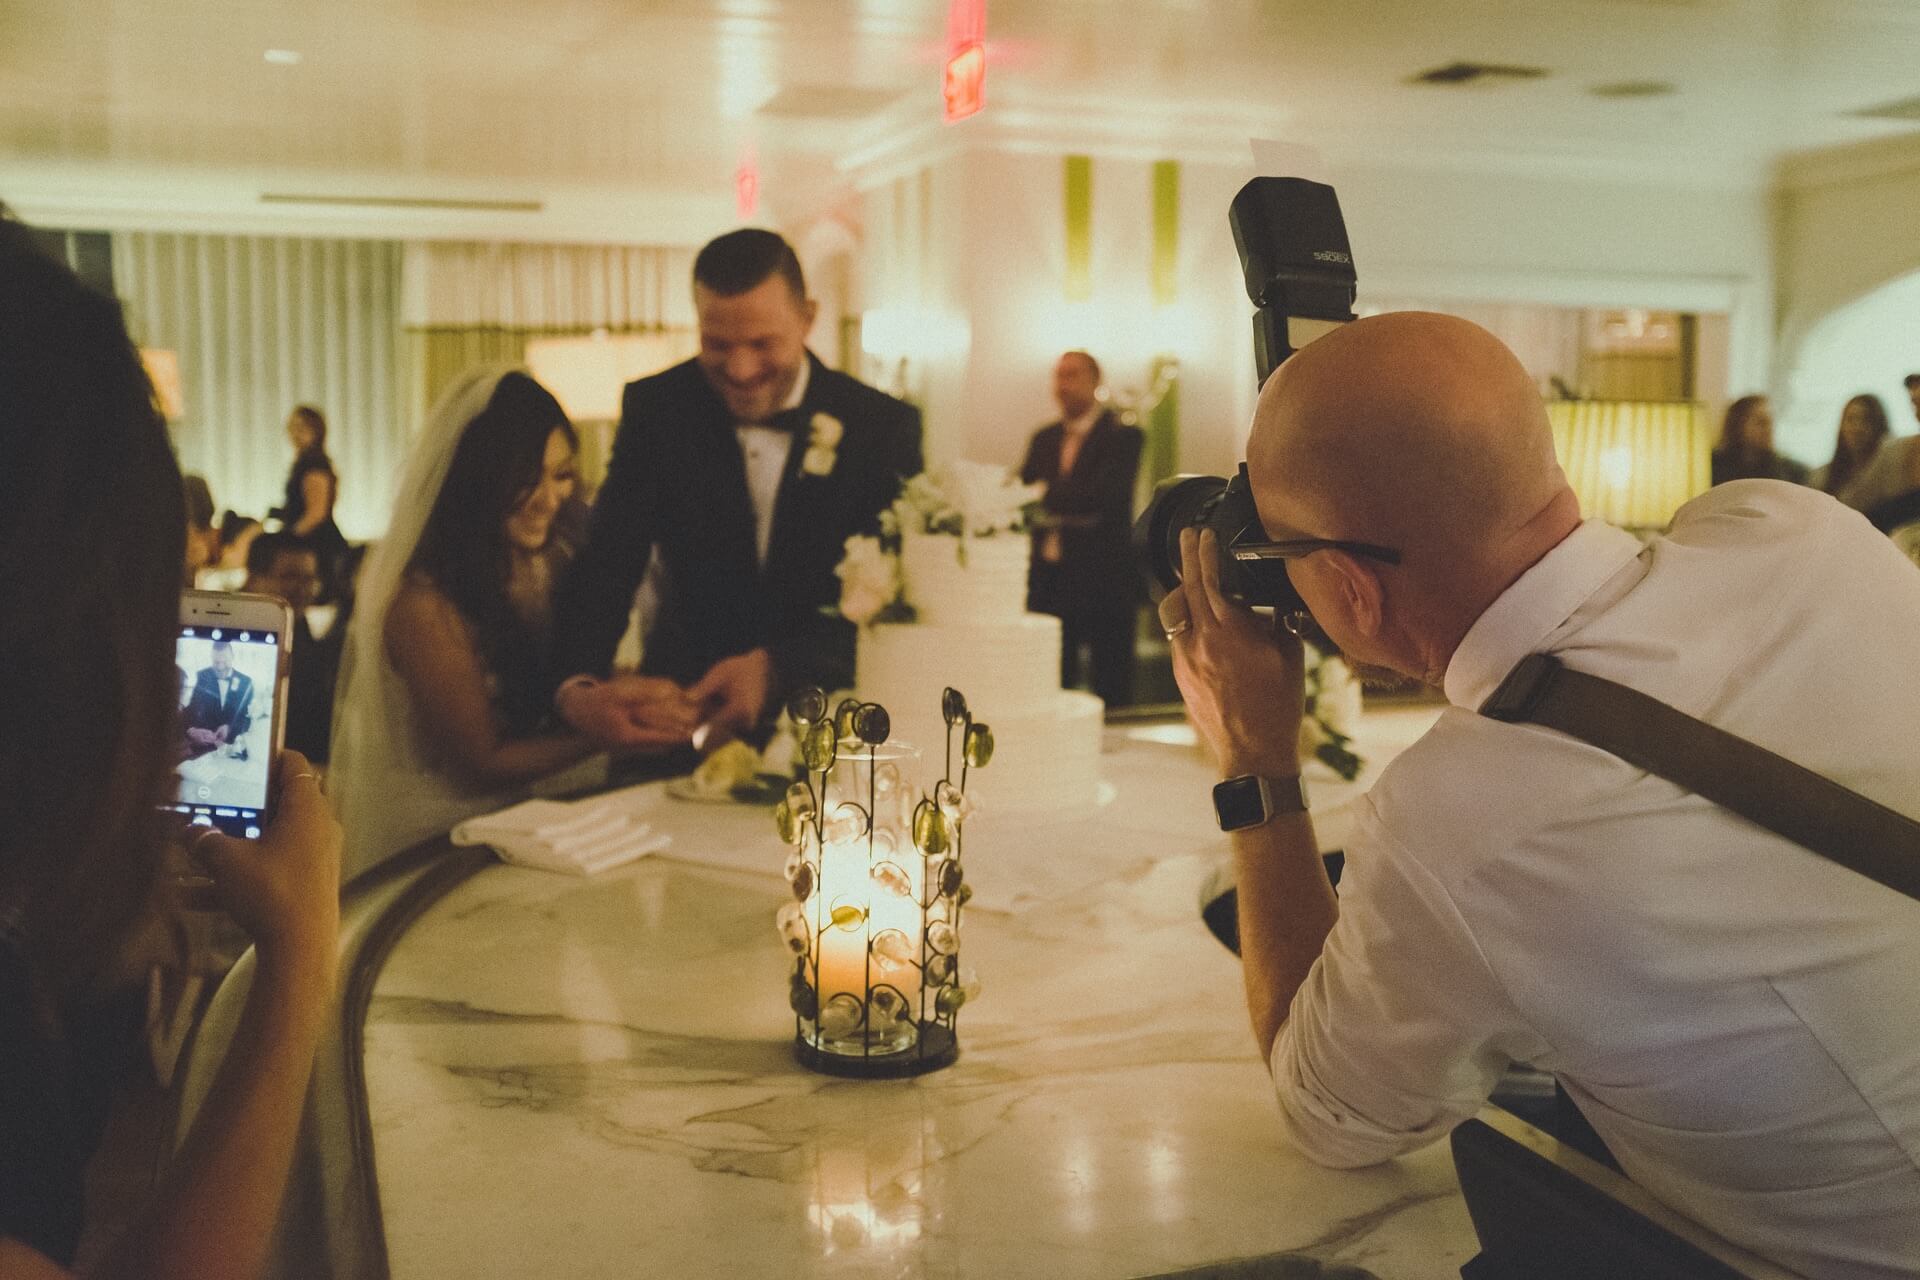 Svatební fotograf fotí pár při krájení dortu